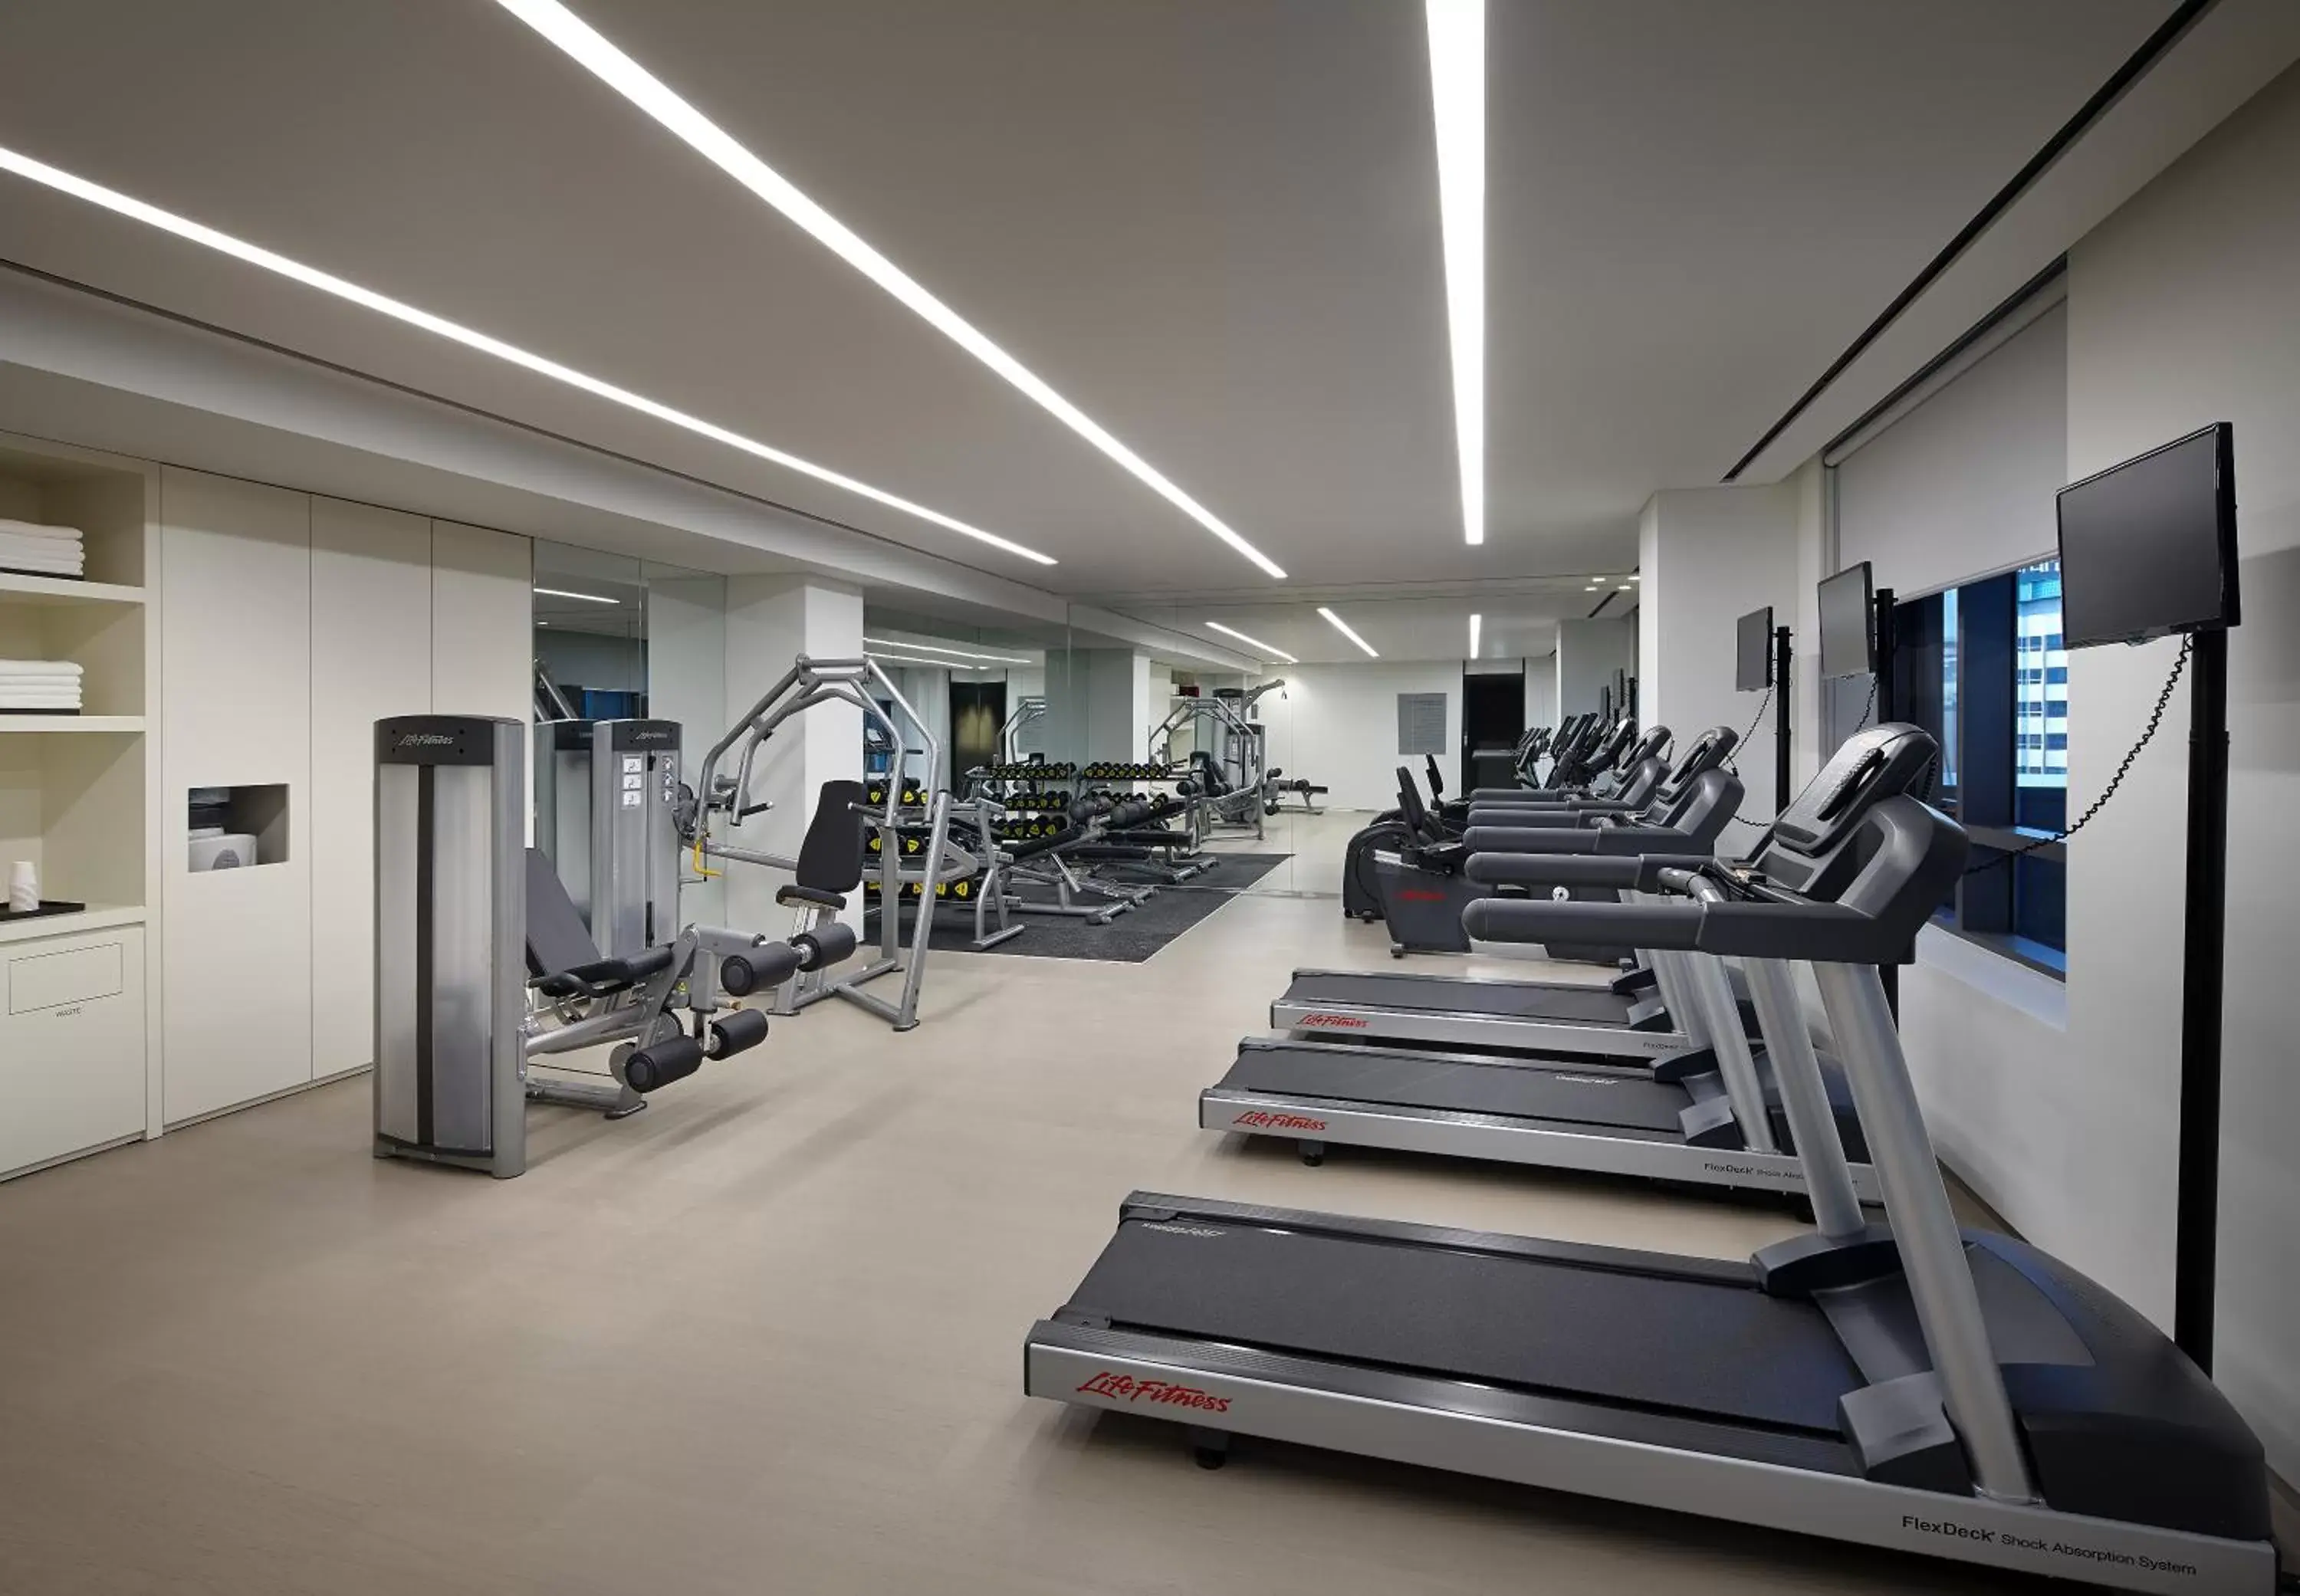 Fitness centre/facilities, Fitness Center/Facilities in Shilla Stay Seocho